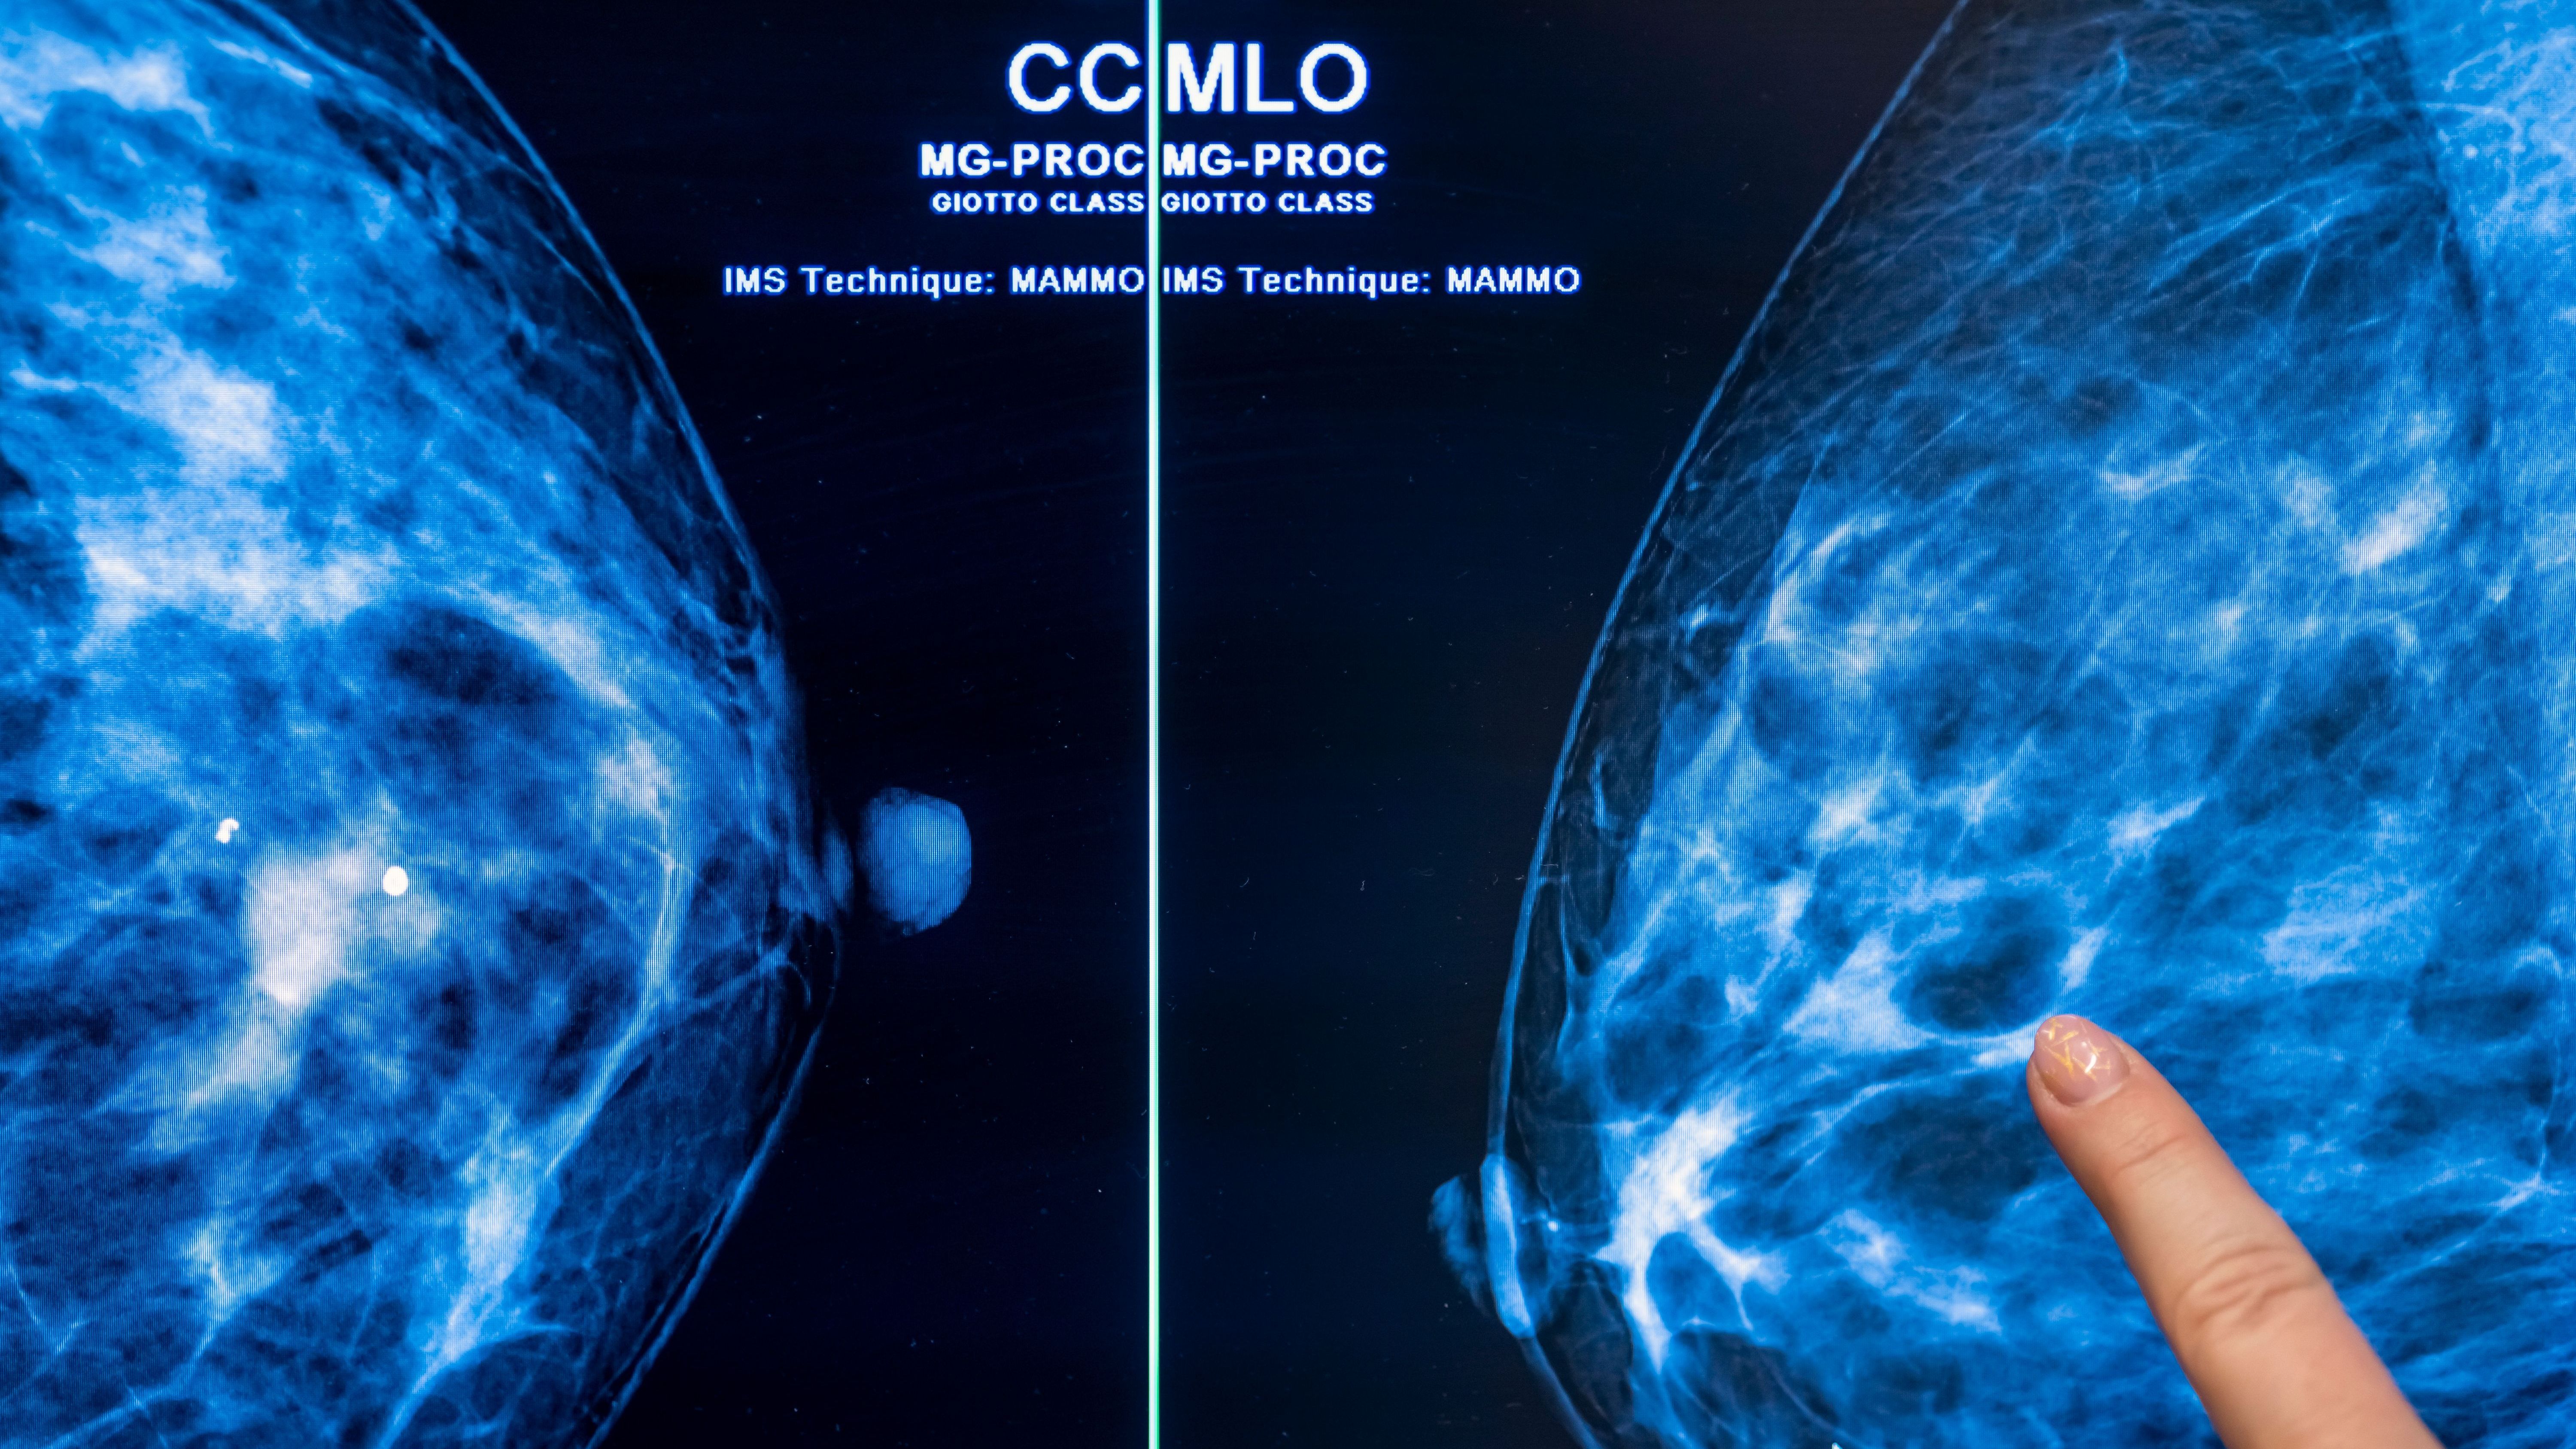 Die Mammografie der Brust einer Frau auf Brustkrebs wird wohl noch lange nicht ausgedient haben. Allerdings könnte es einen Durchbruch in der Forschung gegeben haben. Die Wissenschaftlerin Simona Francese fand heraus, dass sich anhand des Fingerabdrucks frühzeitig Brustkrebs erkennen ließe.